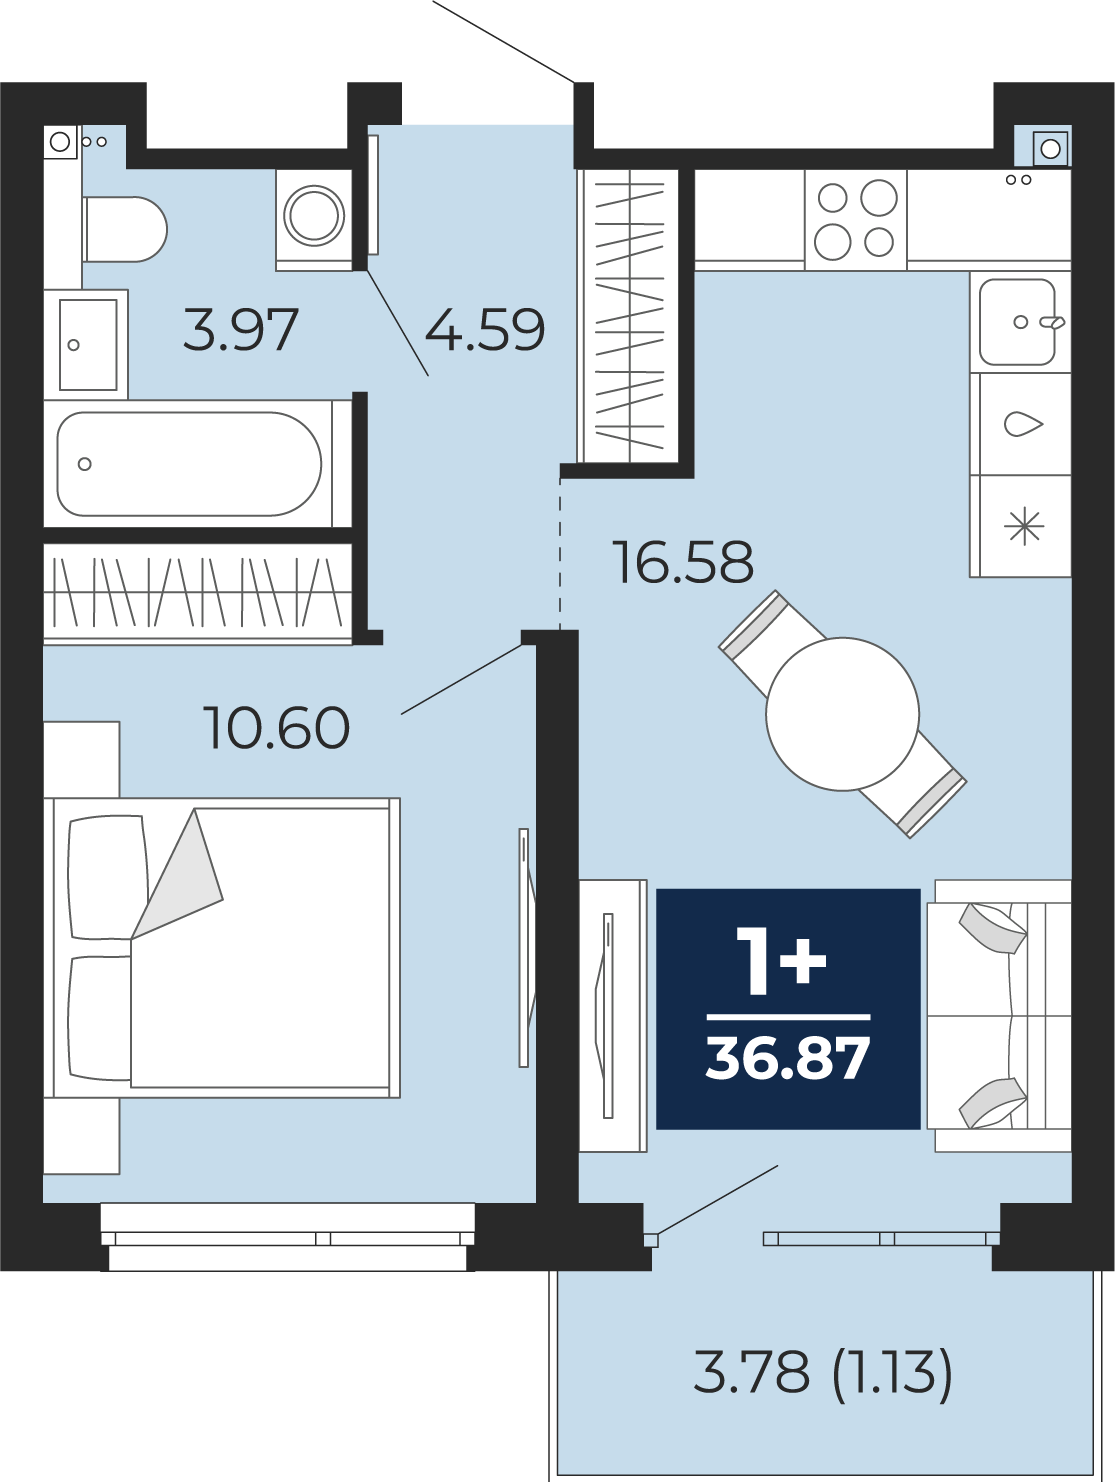 Квартира № 256, 1-комнатная, 36.87 кв. м, 15 этаж